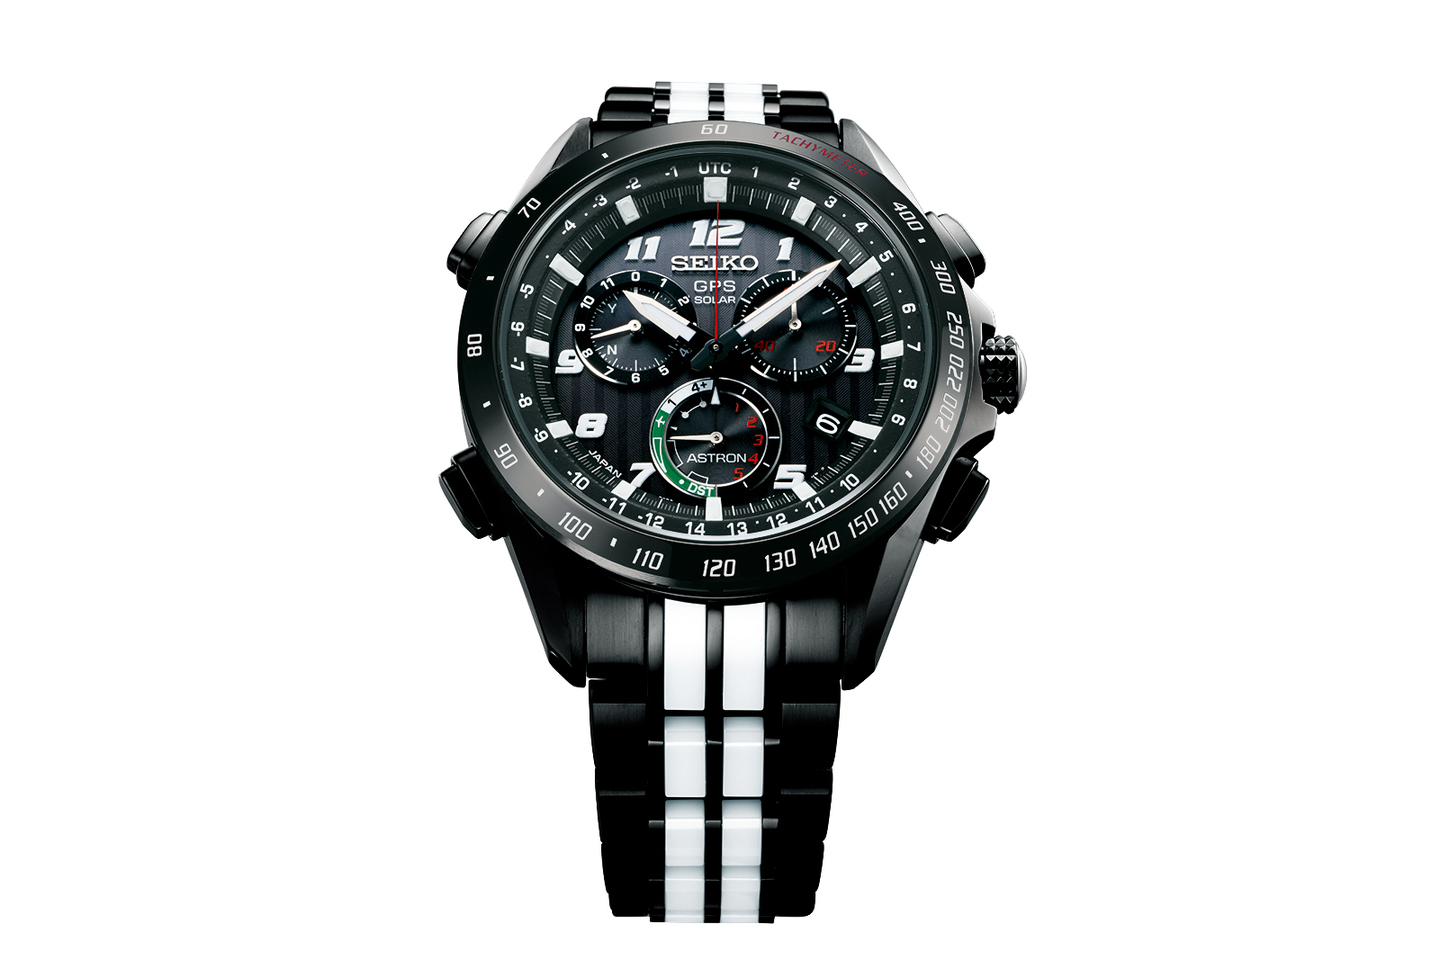 Seiko Astron GPS Chronograph by Giugiaro Design - Luxury Watches Brands ...